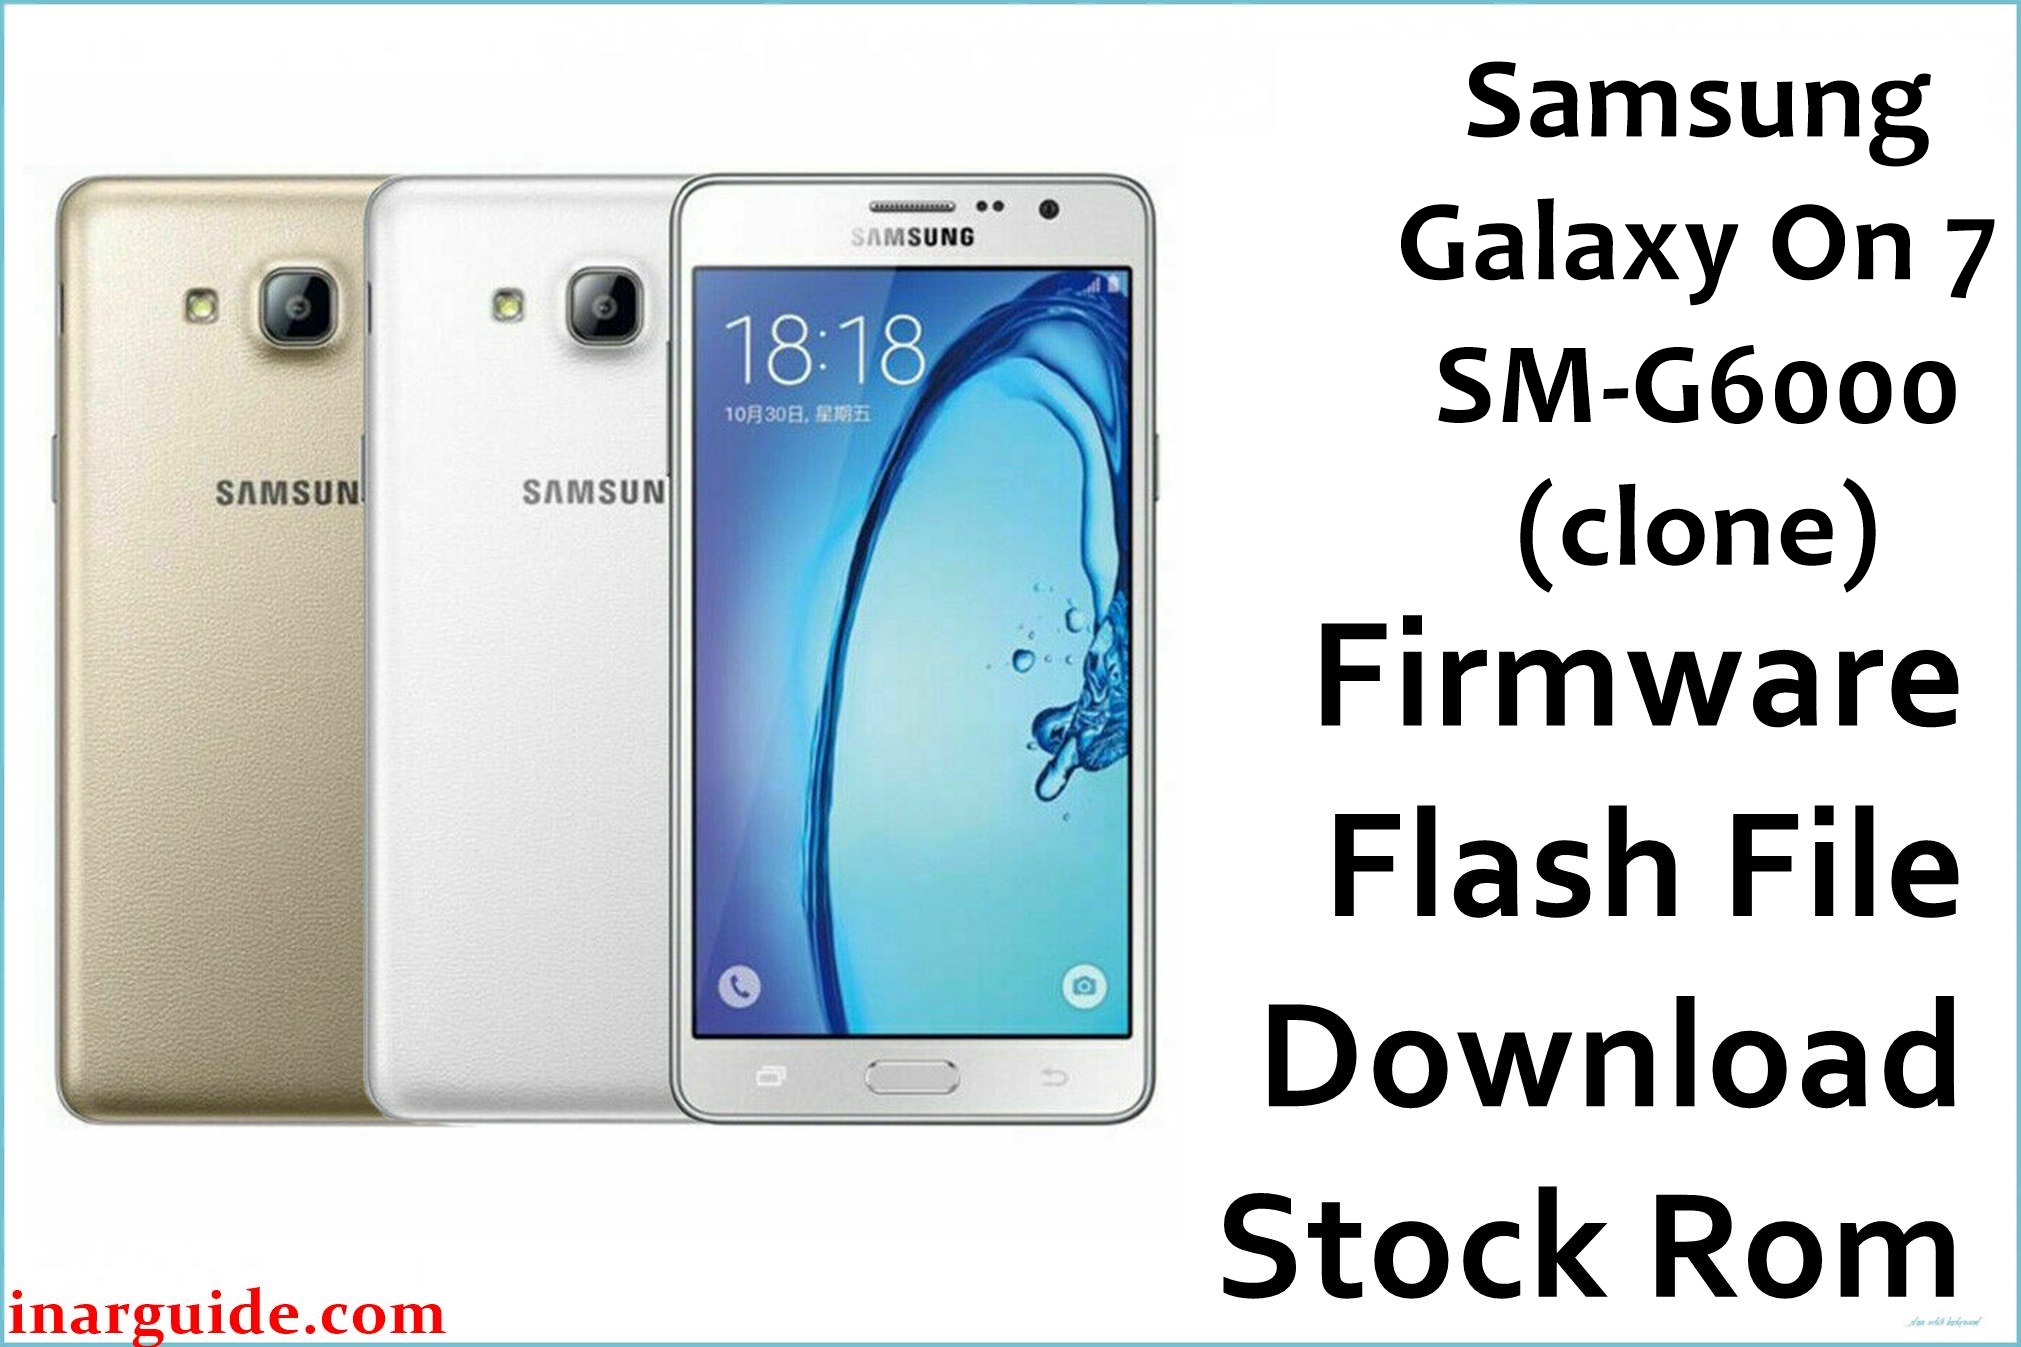 Samsung Galaxy On 7 SM G6000 clone